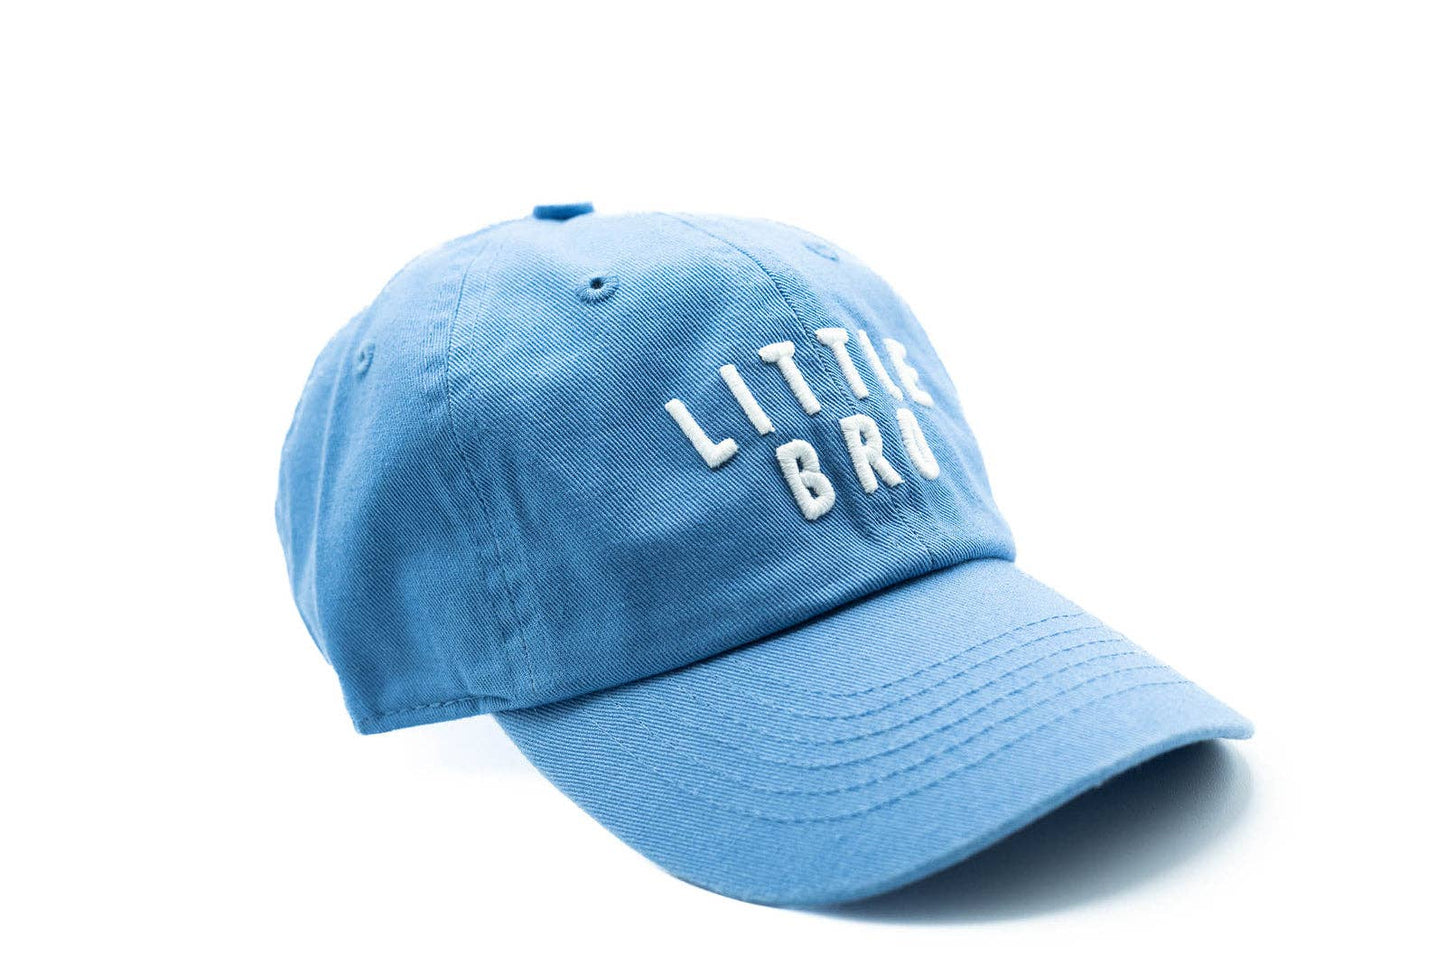 Cornflower Blue Little Bro Hat: Toddler (1Y-4Y)